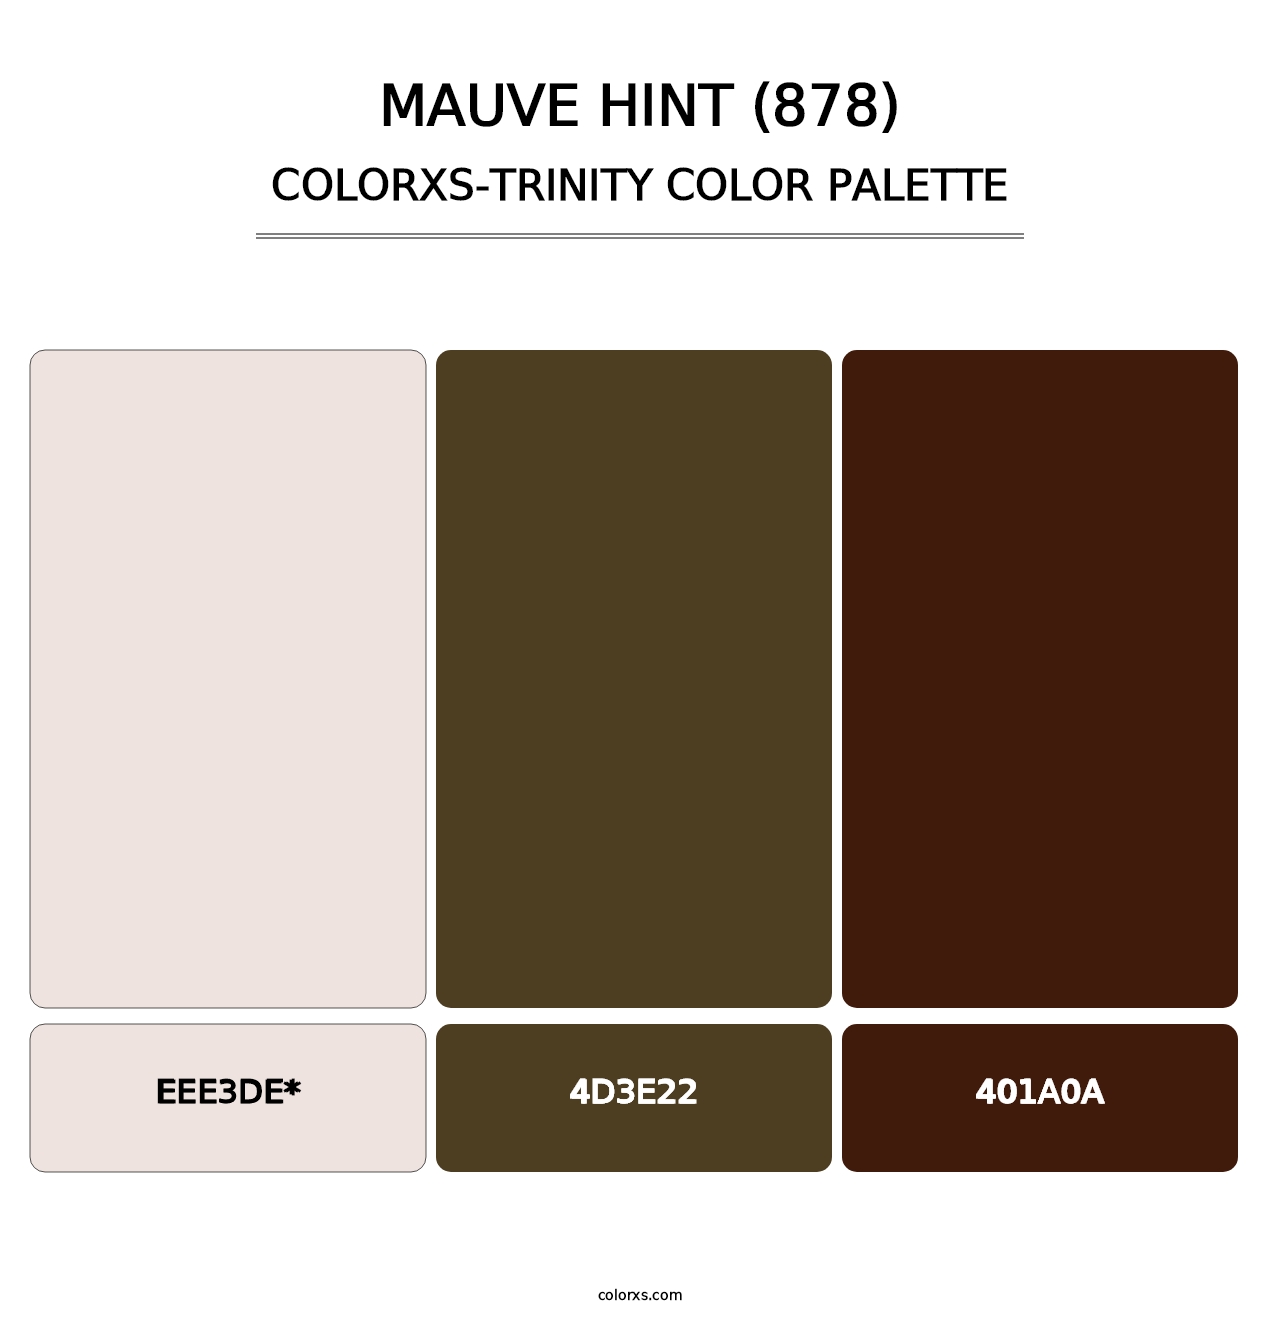 Mauve Hint (878) - Colorxs Trinity Palette